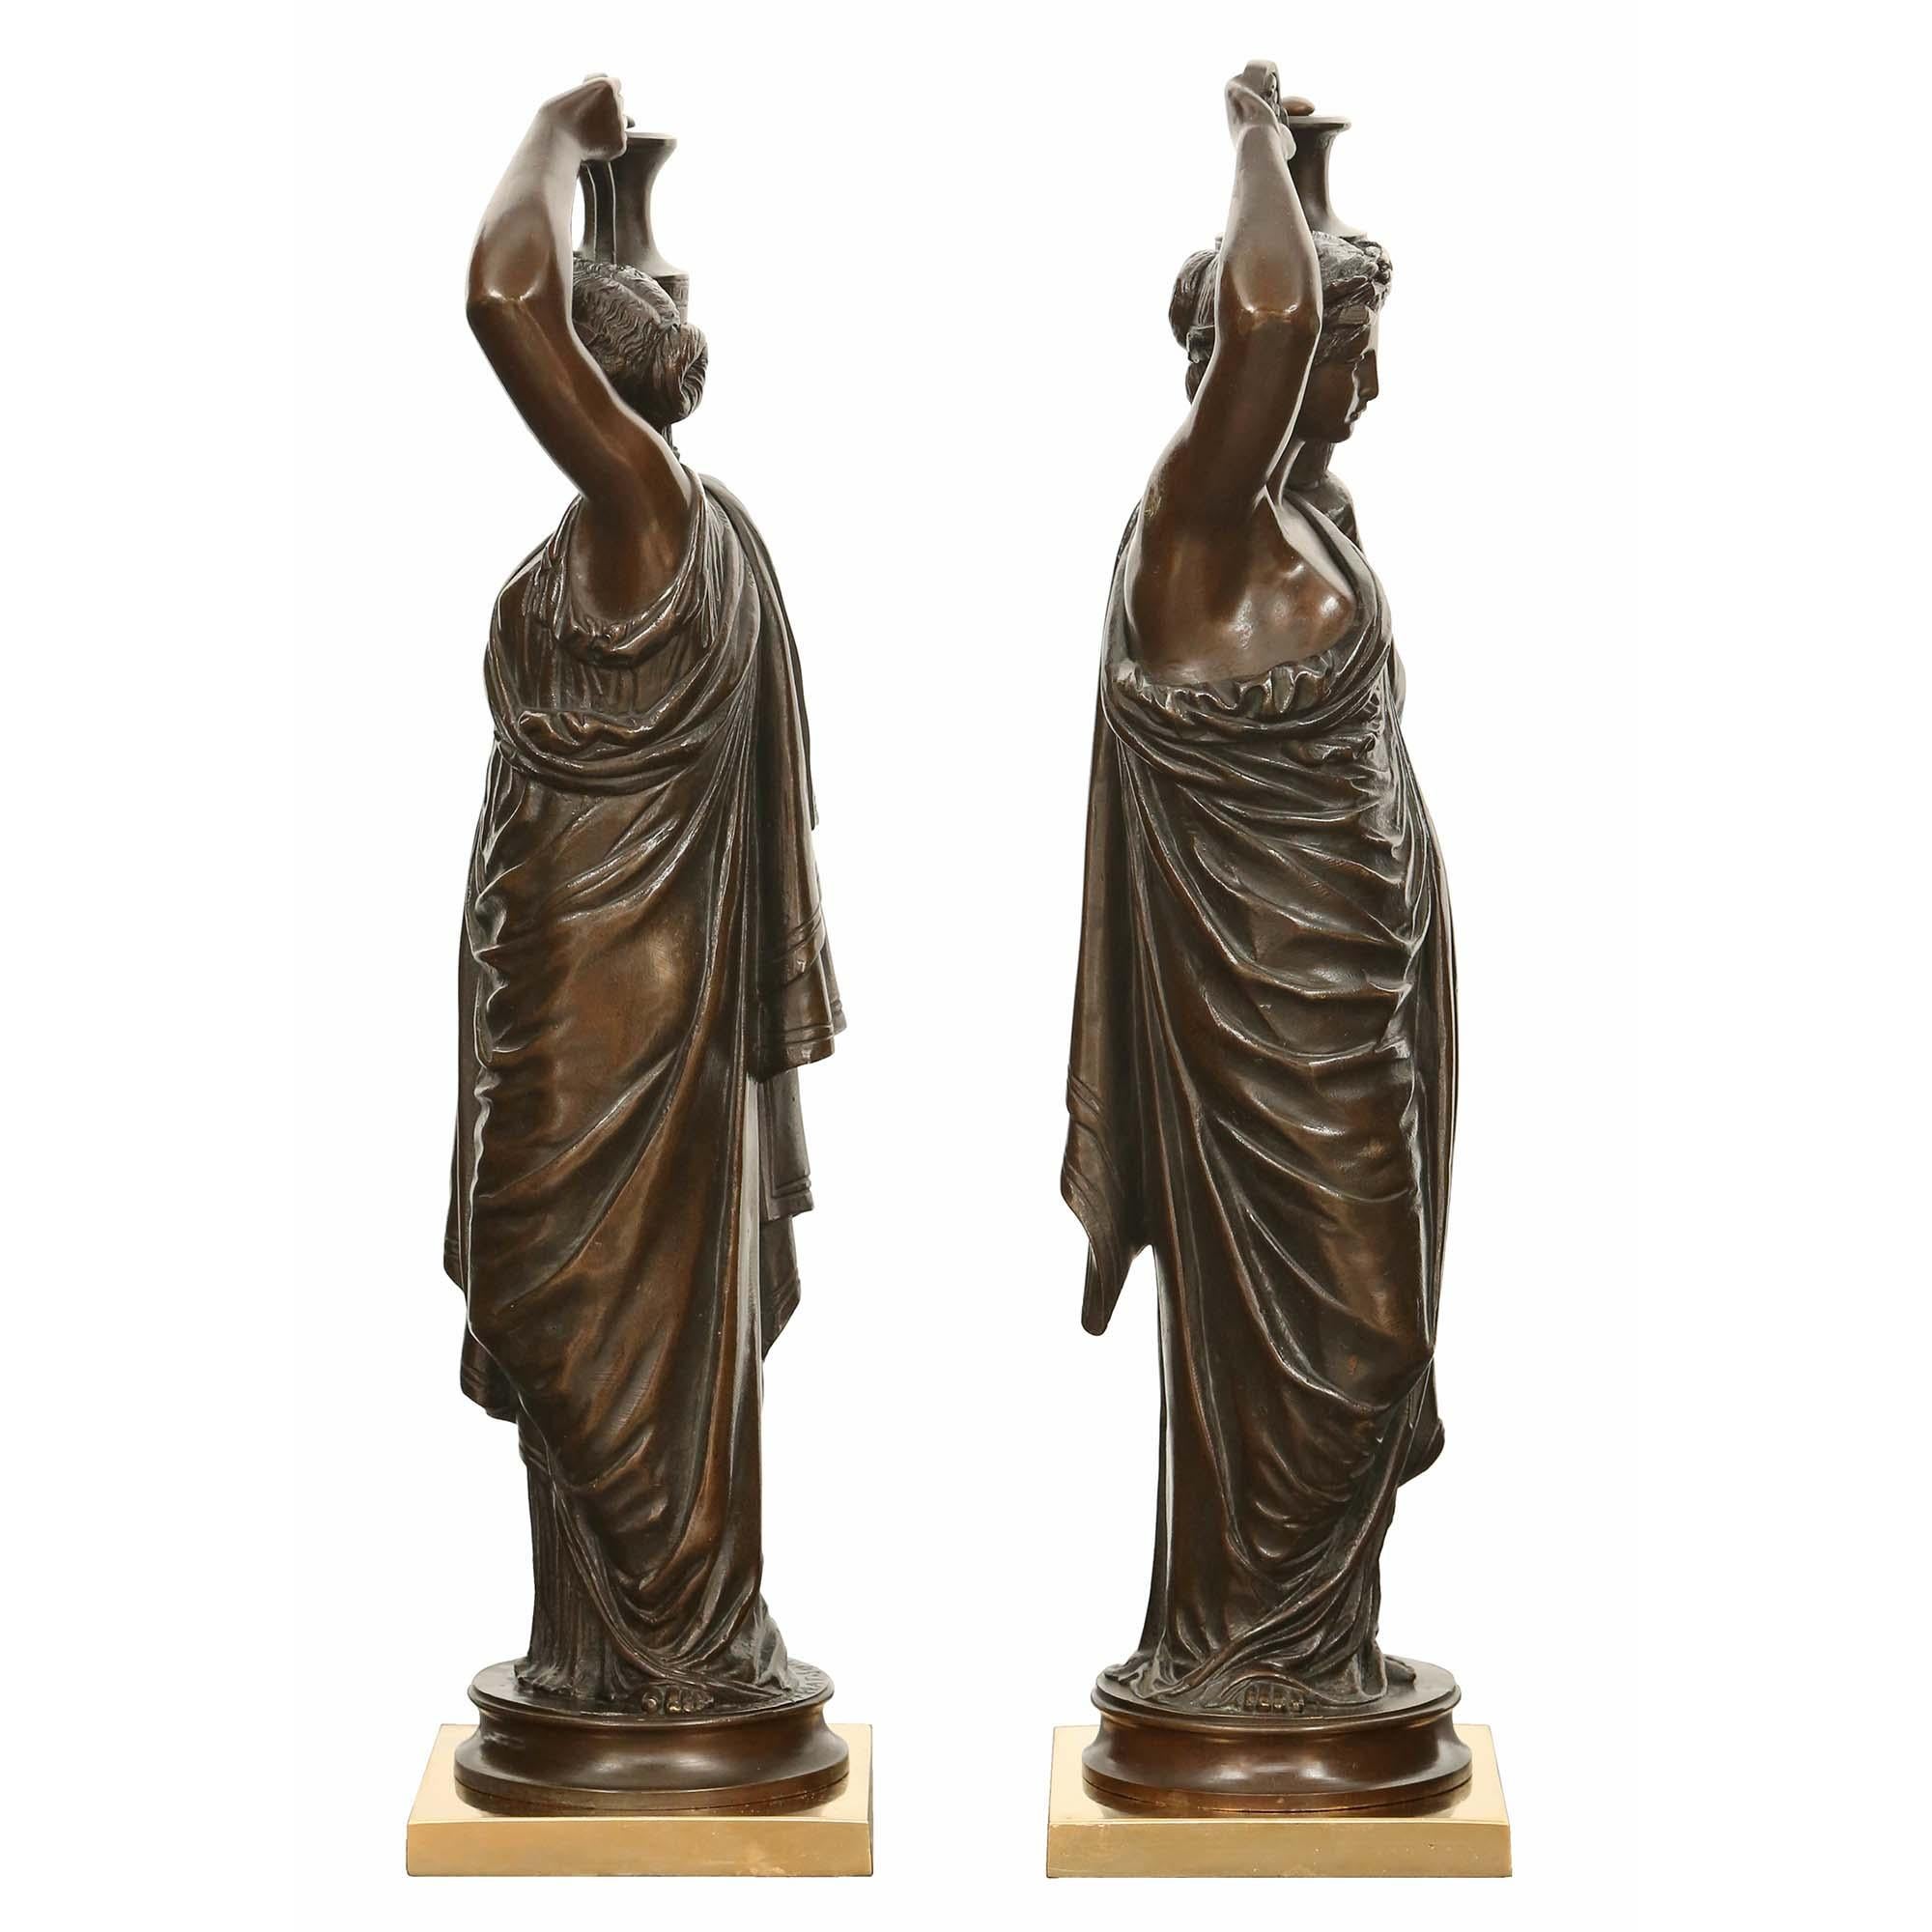 Une charmante paire de statues françaises en bronze patiné du 19ème siècle, signées H. Ferrat. Chaque bronze est surélevé par une base carrée en bronze doré et par un piédestal circulaire en bronze patiné. Les bronzes représentent des jeunes filles